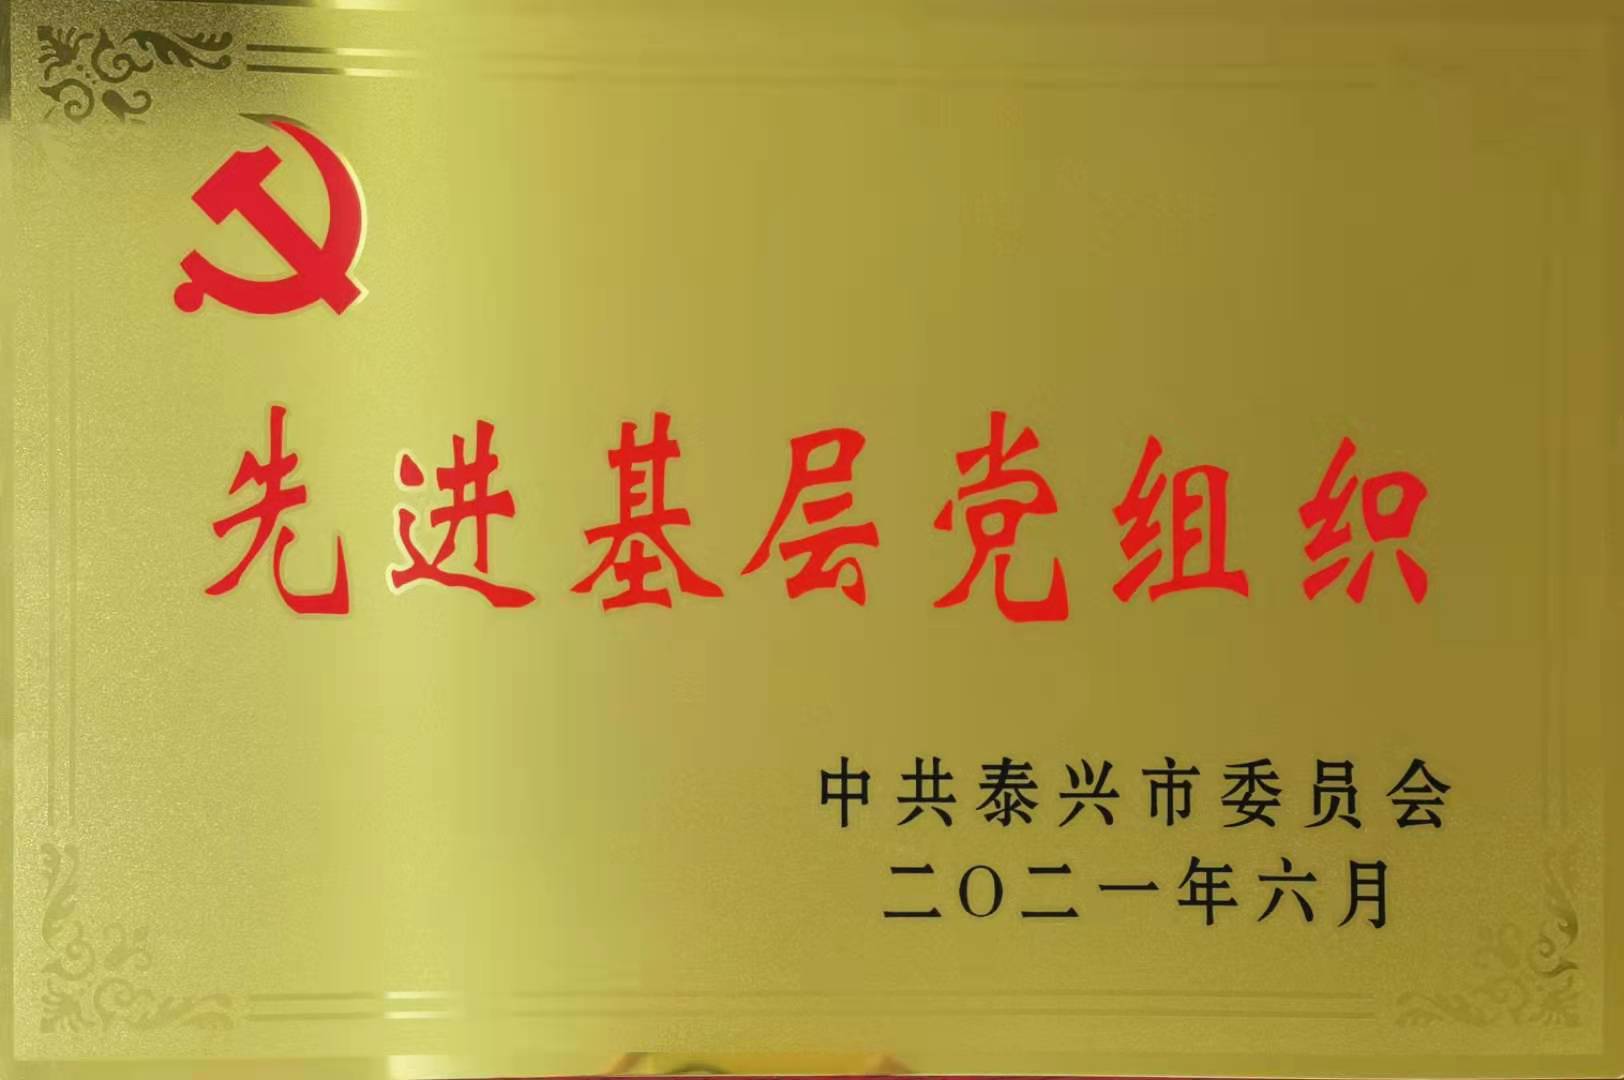 祝賀國裕集團支部委員會獲“泰興市先進基層黨組織”榮譽稱號